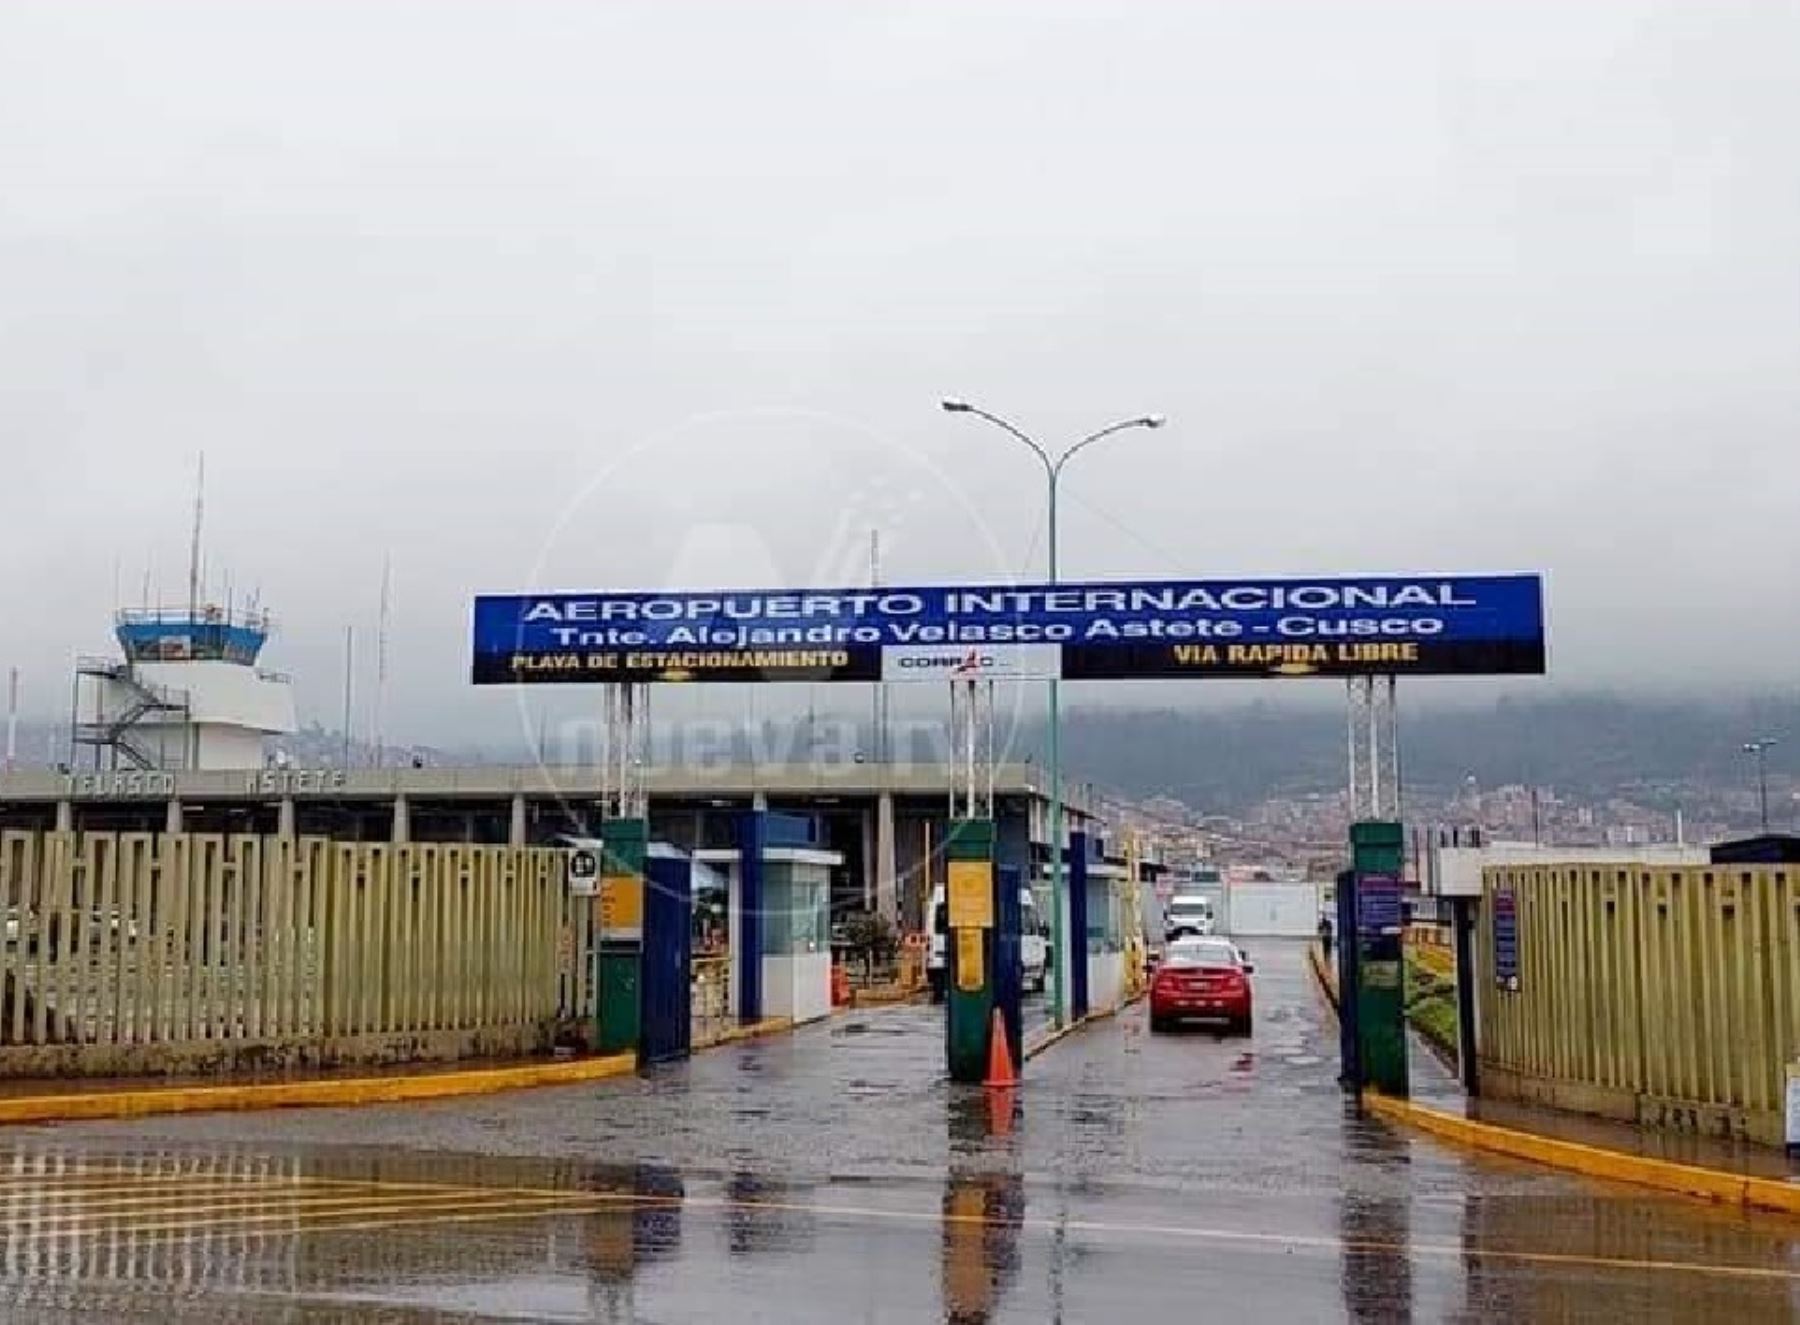 Cientos de pasajeros se encuentran varados en Cusco debido a la suspensión de vuelos a causa de la caída de nieve que afecta a toda la región. ANDINA/Percy Hurtado Santillán